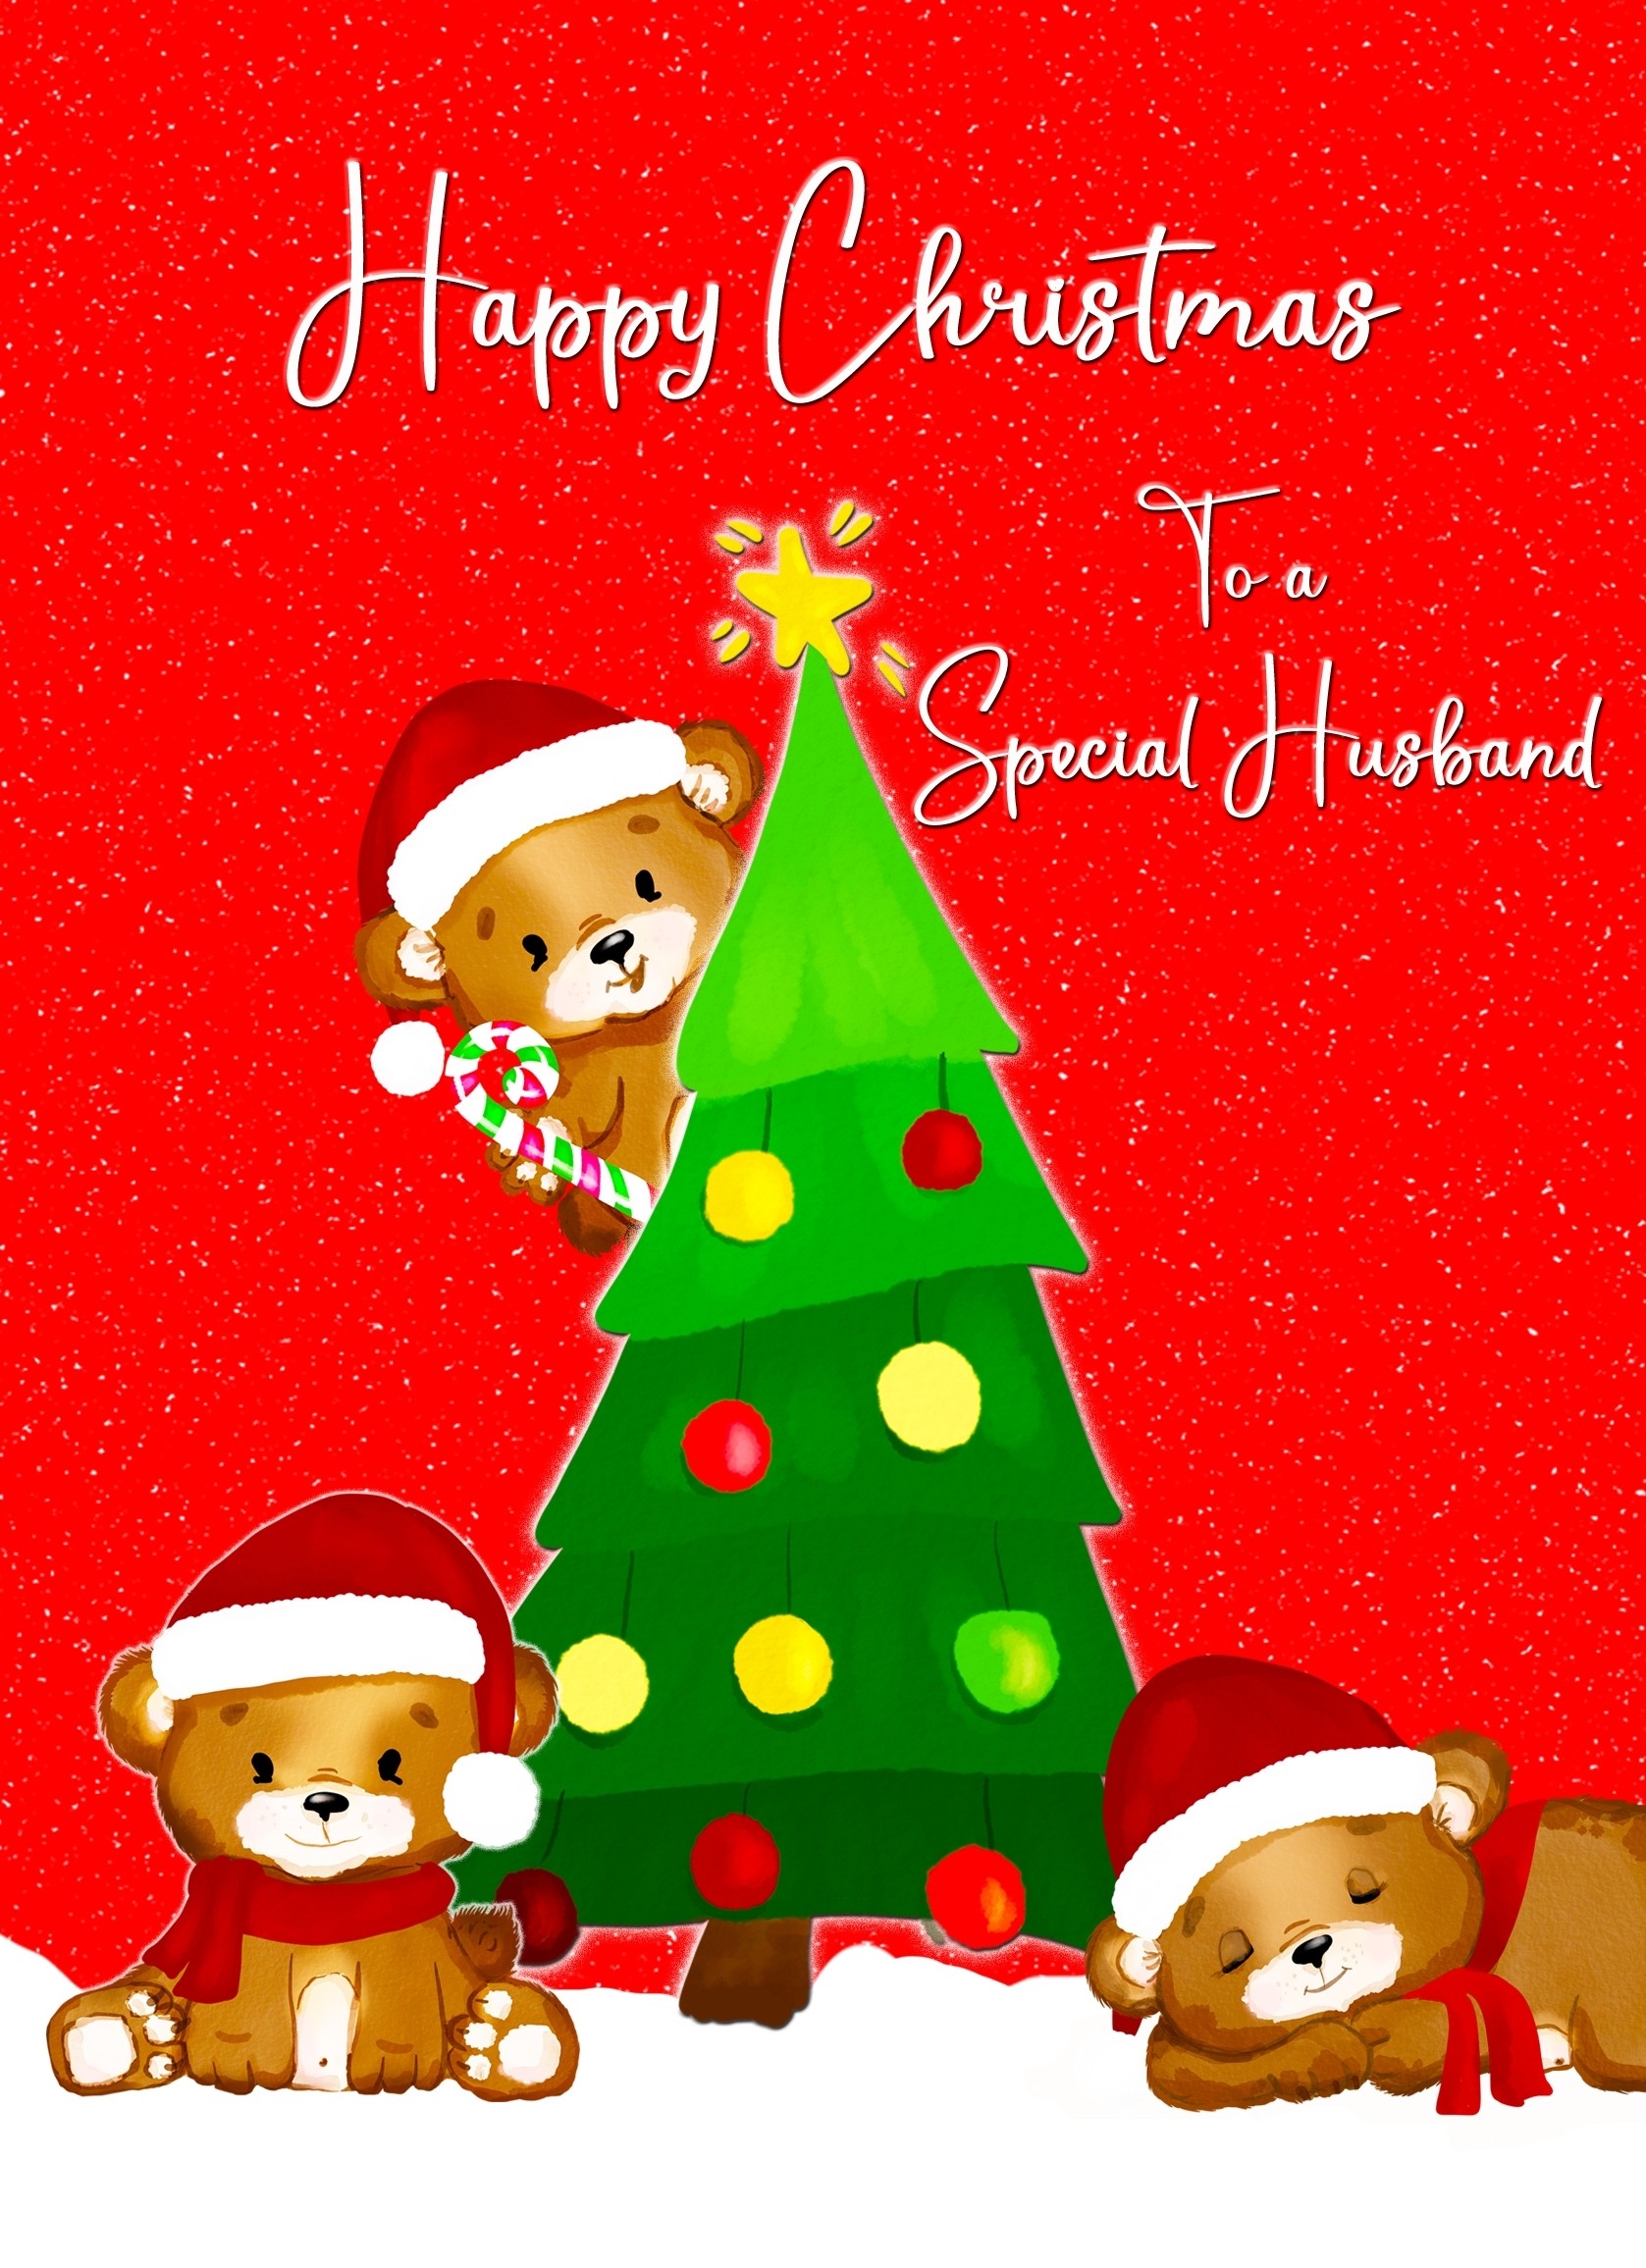 Christmas Card For Husband (Red Christmas Tree)